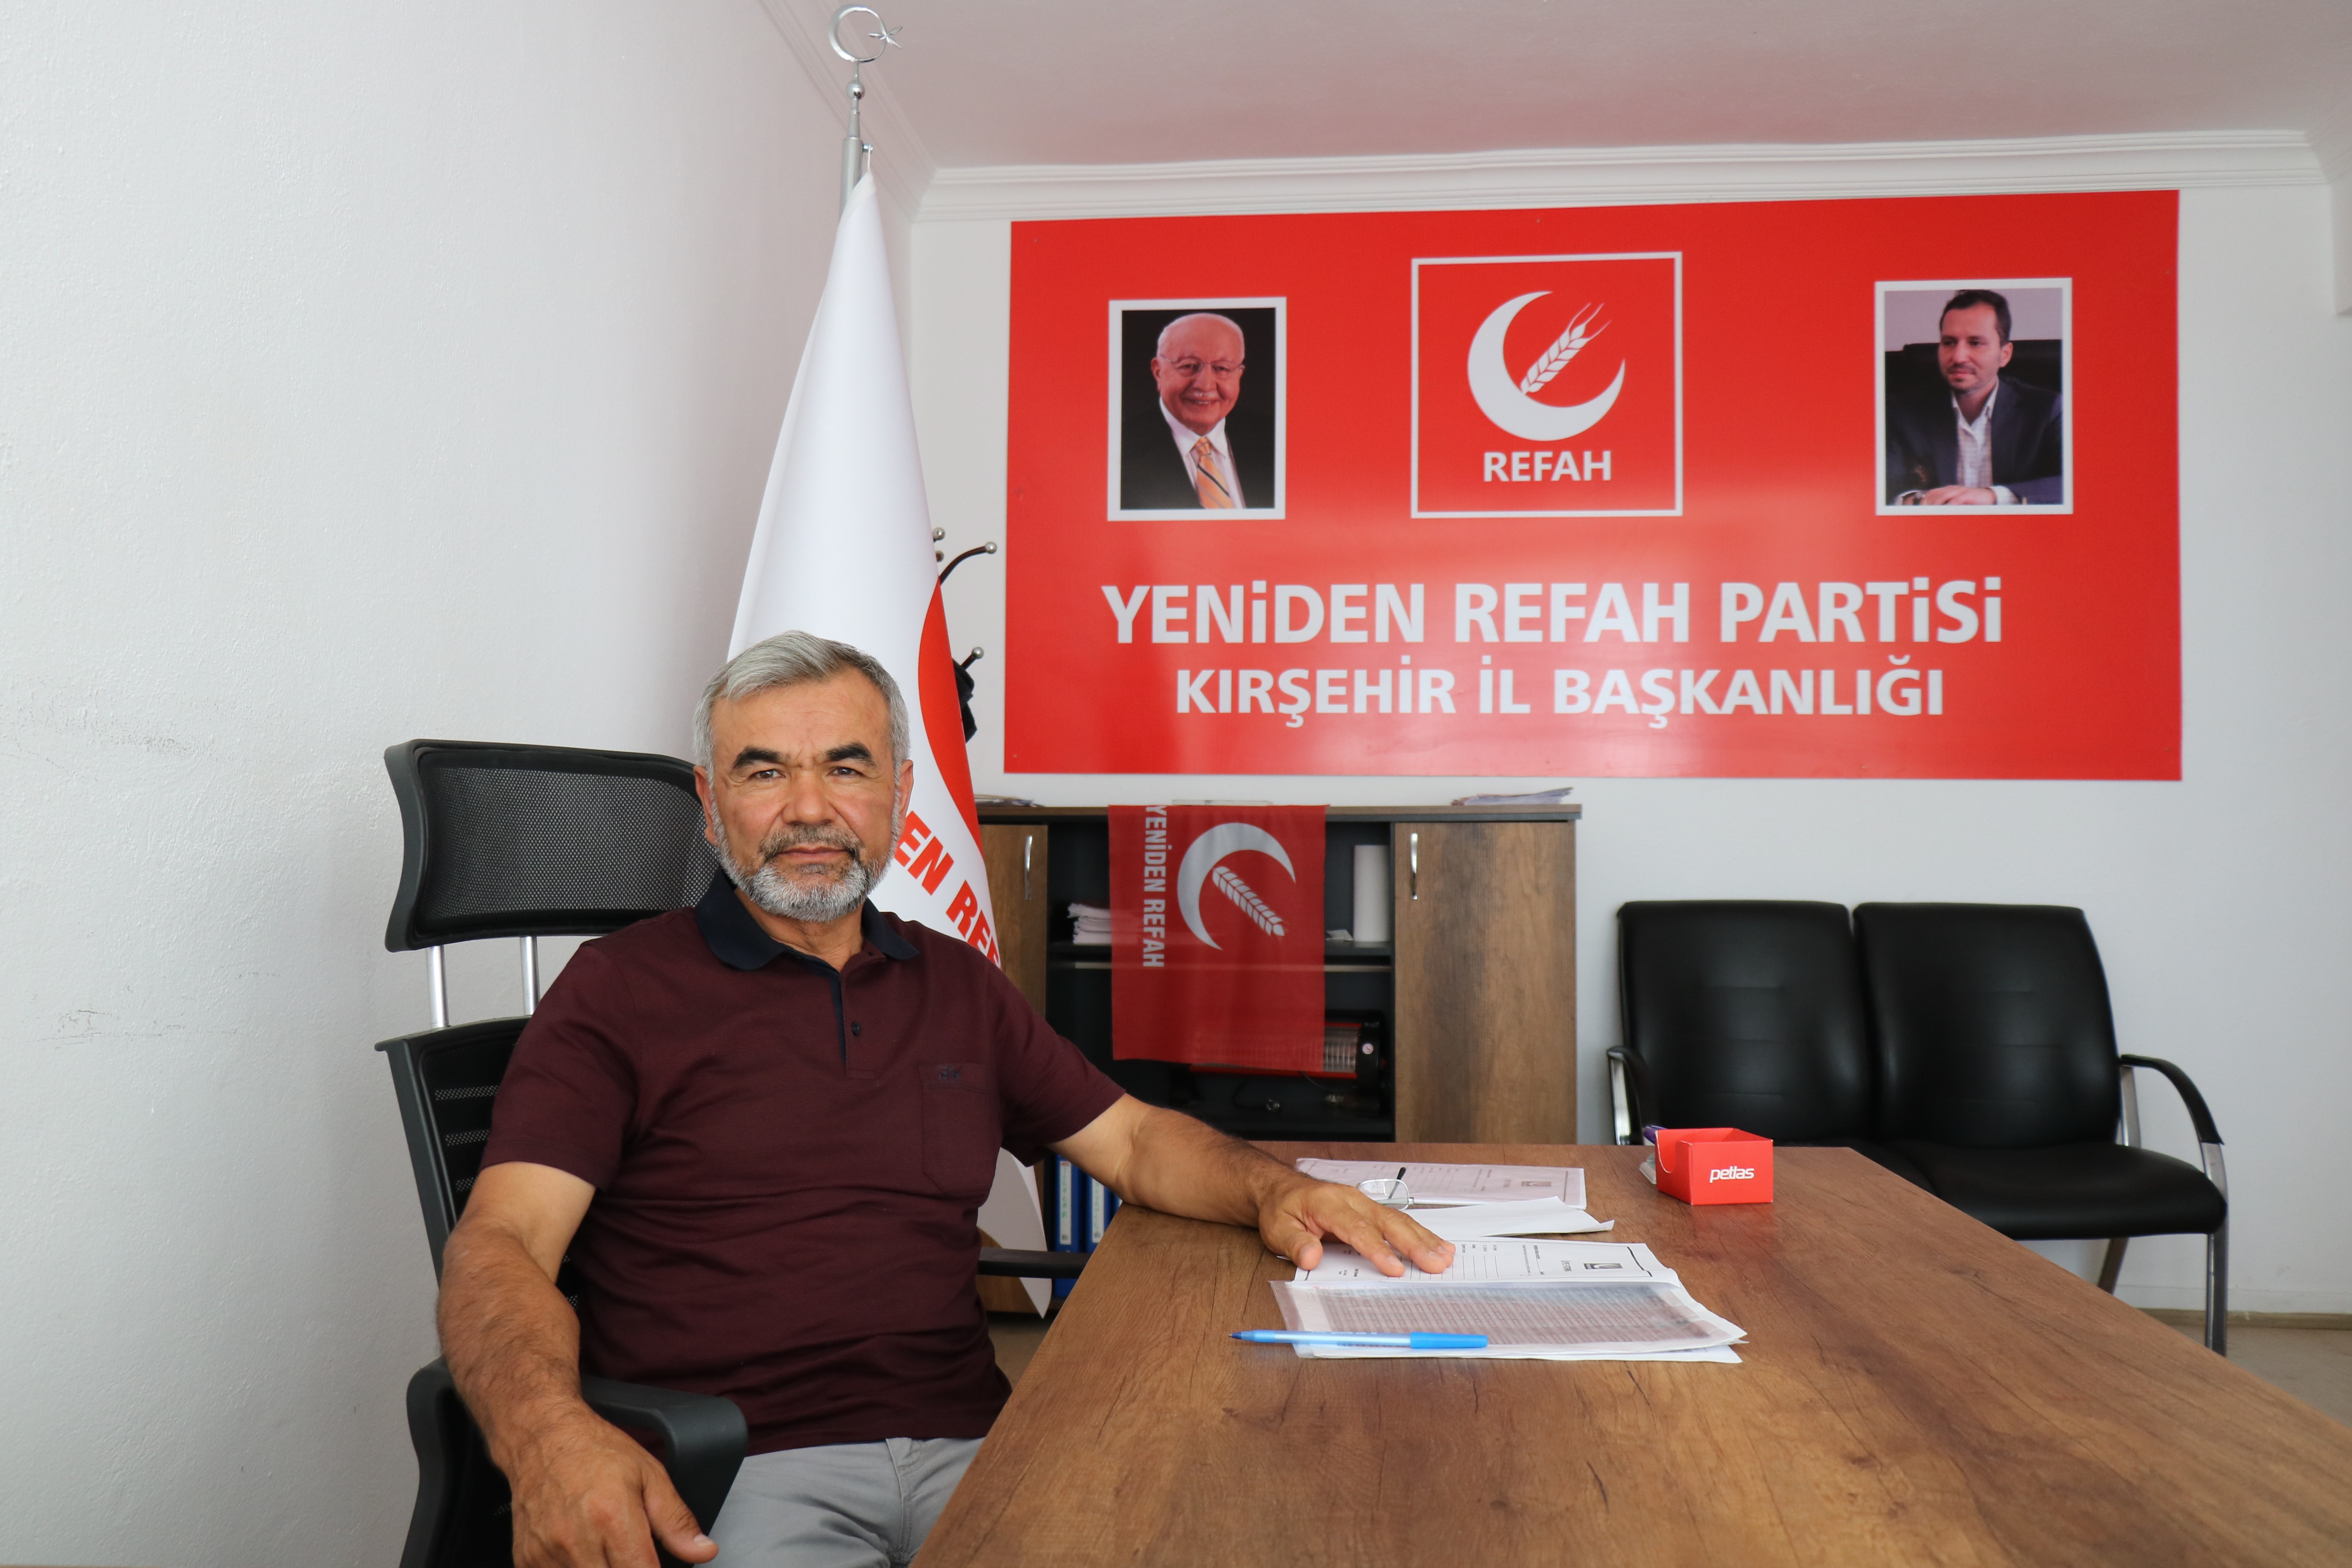 Yeniden Refah Partisi İl Başkanı Yavuz: “Yeni parti çalışmaları ile Cumhurbaşkanına haksızlık yapılıyor”